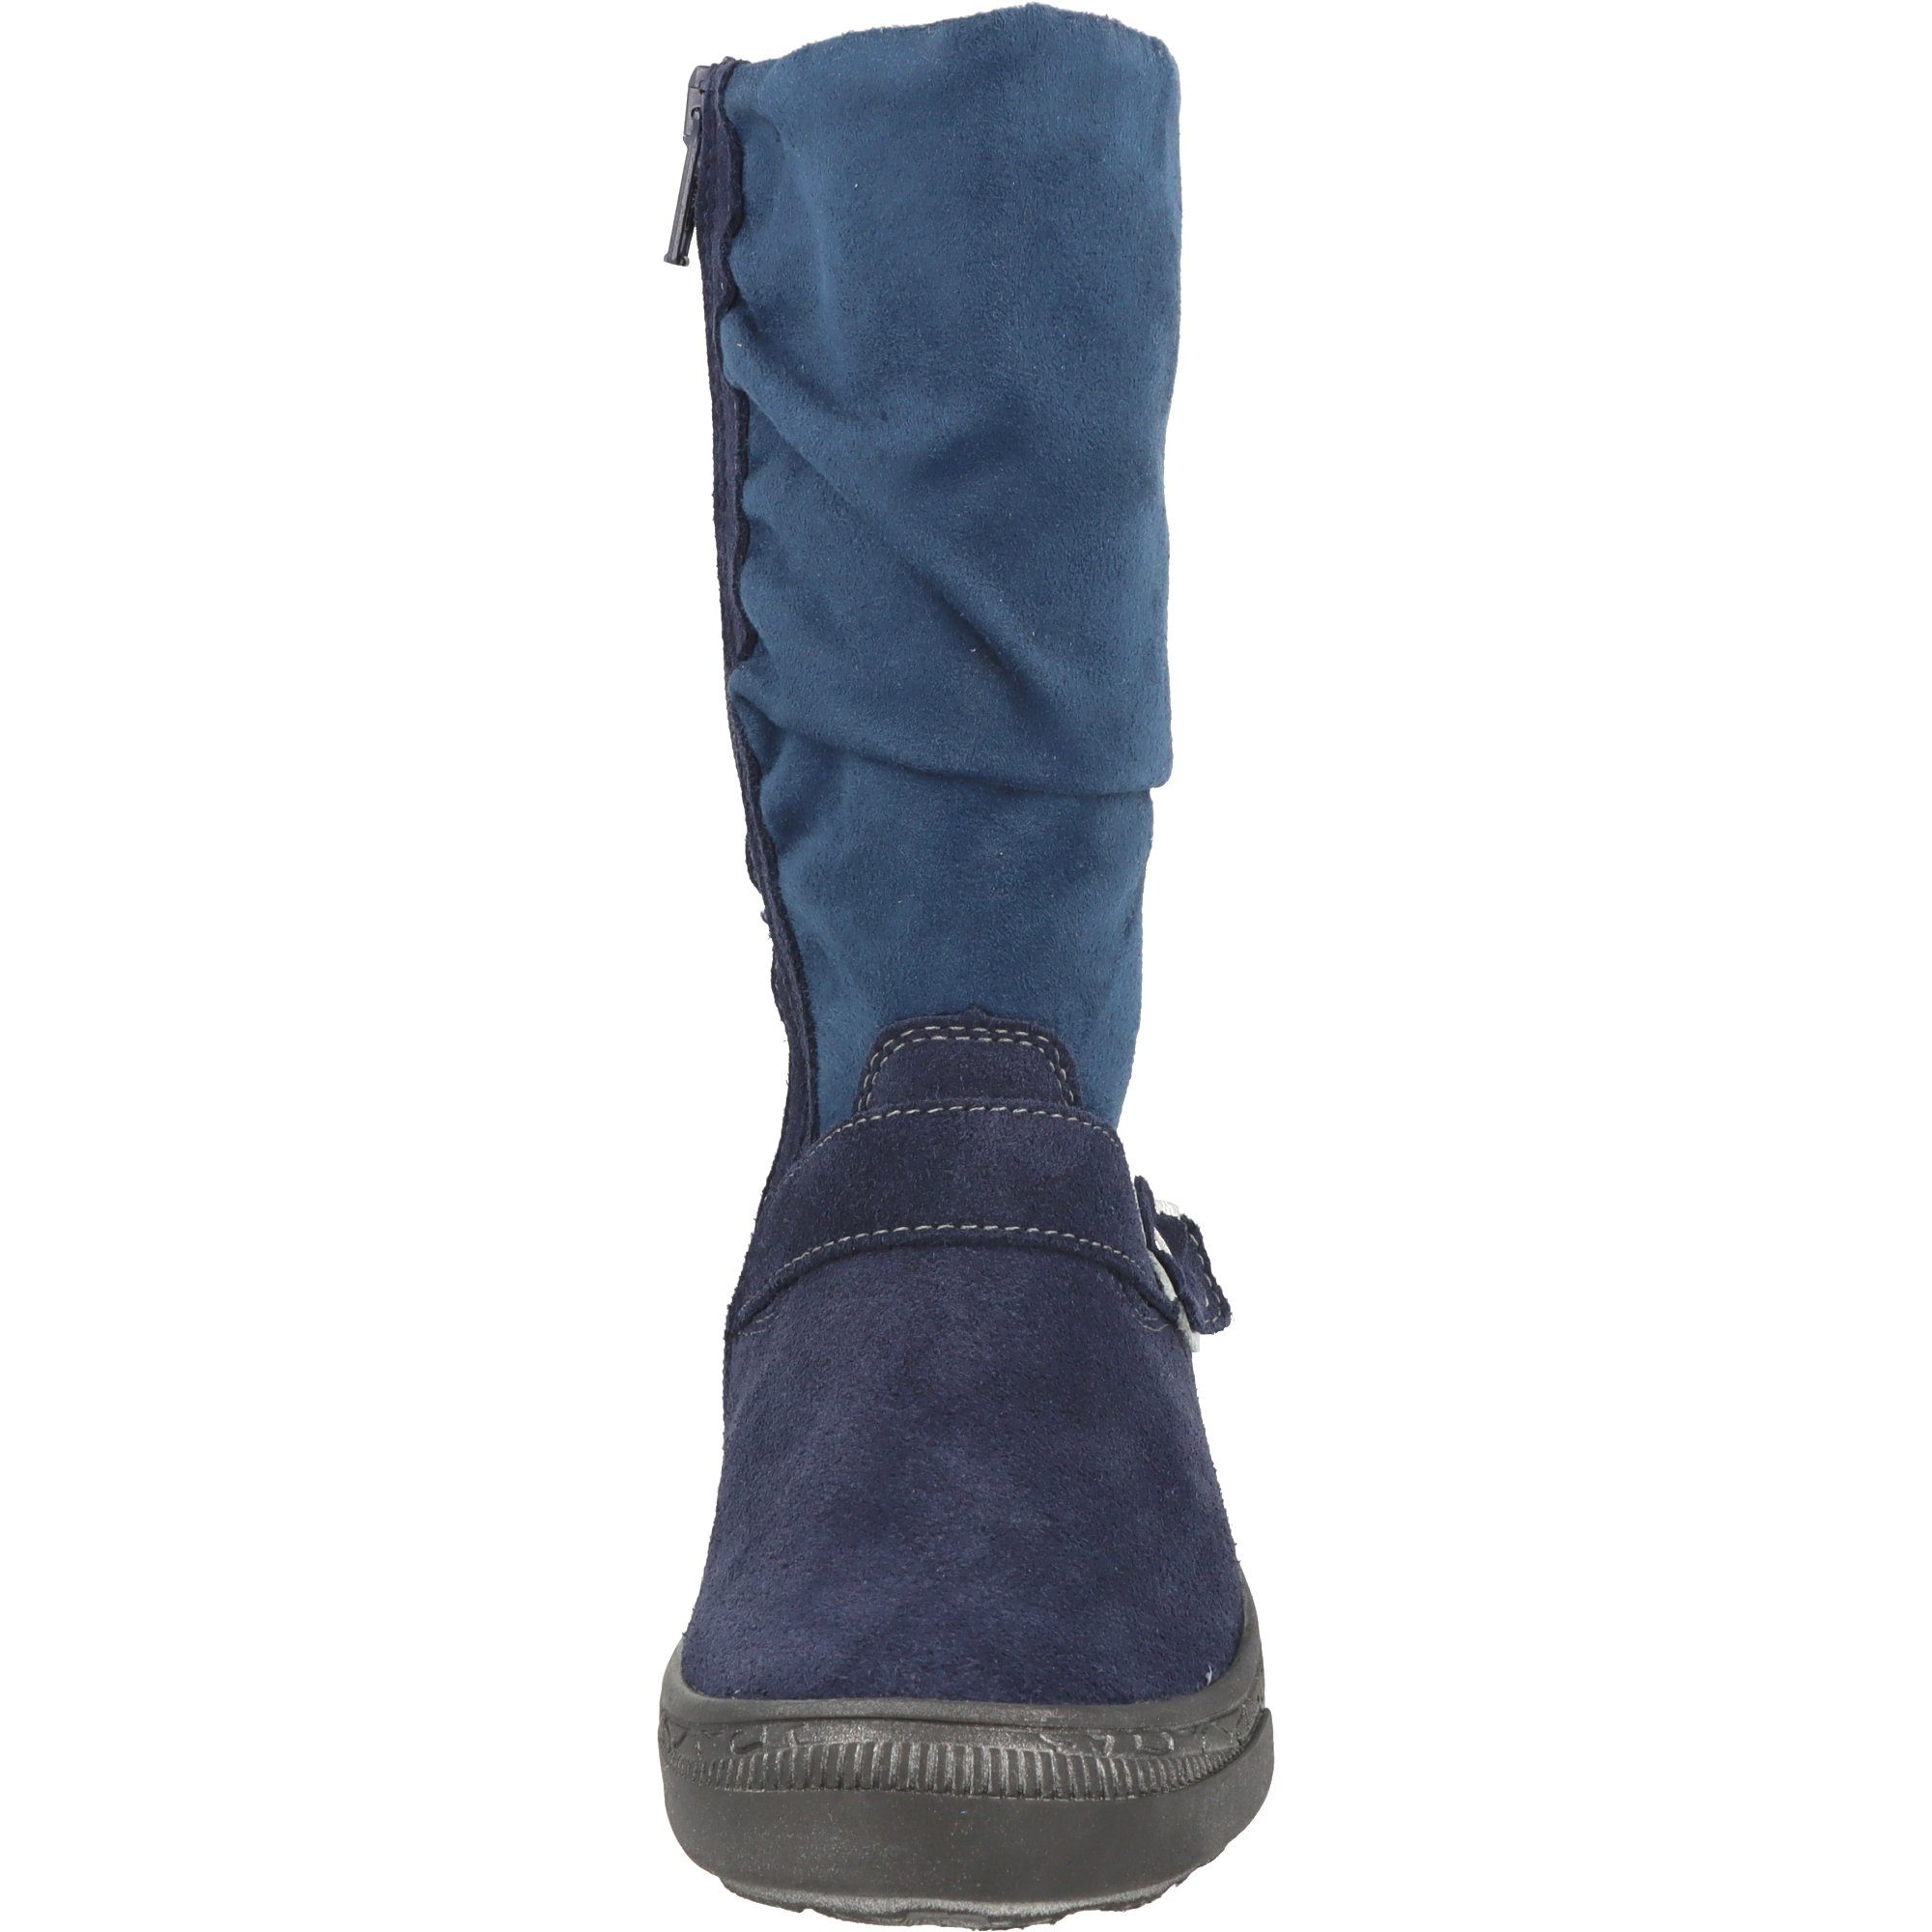 4152-256 Winterstiefel Schuhe Tex Mädchen Richter Blume Blau gefüttert Leder Stiefel